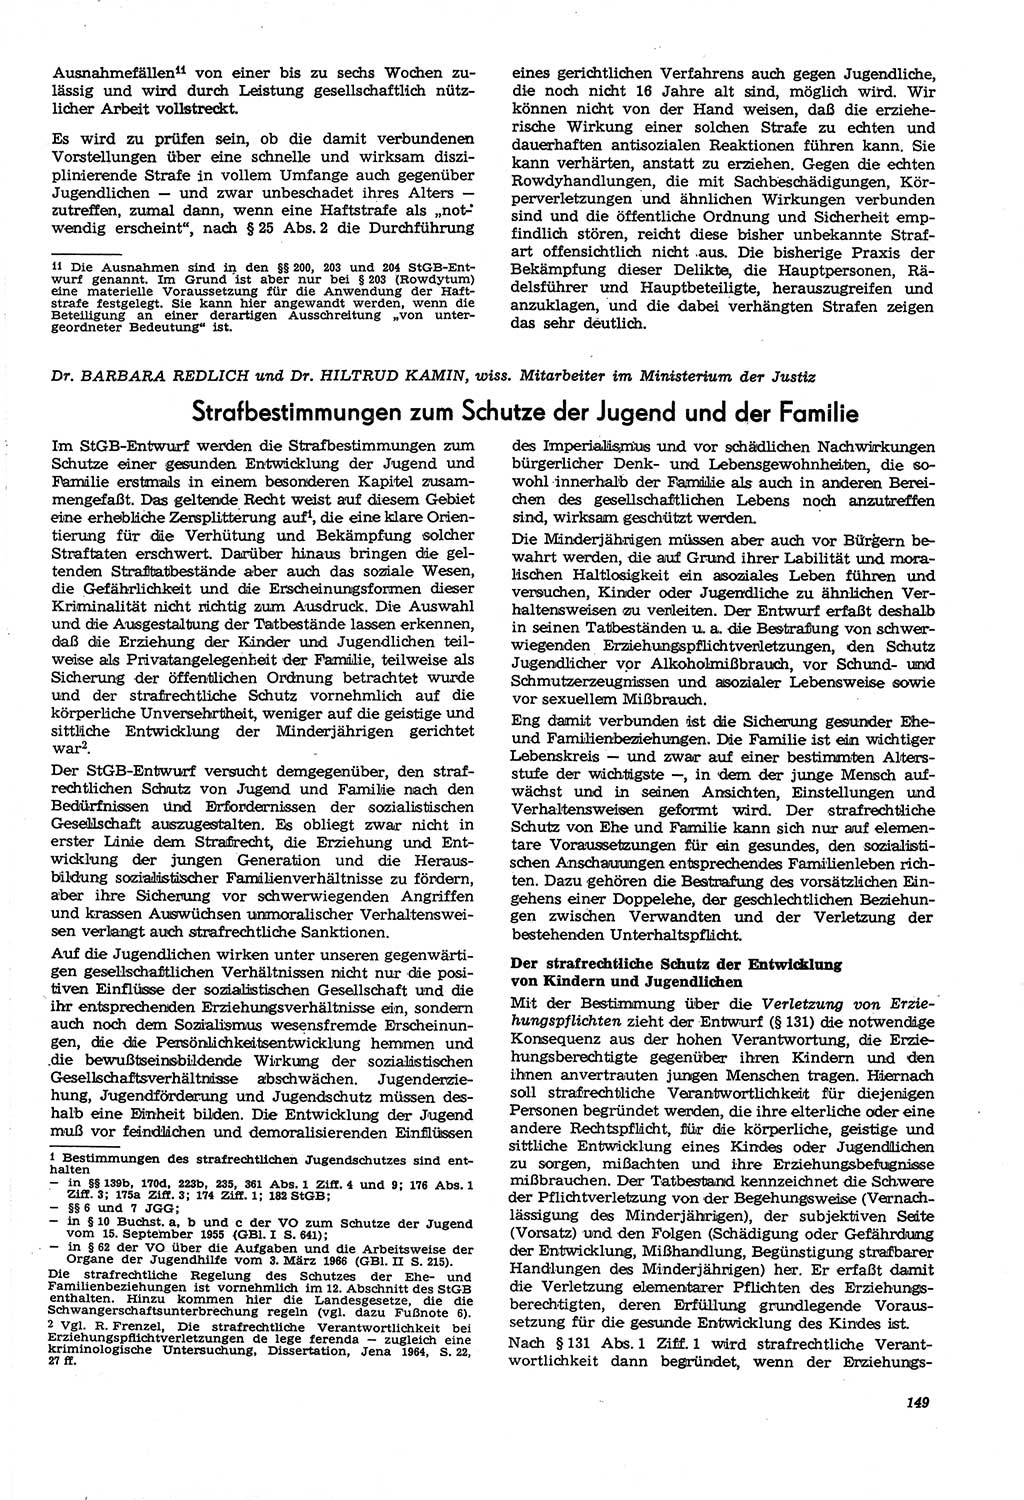 Neue Justiz (NJ), Zeitschrift für Recht und Rechtswissenschaft [Deutsche Demokratische Republik (DDR)], 21. Jahrgang 1967, Seite 149 (NJ DDR 1967, S. 149)